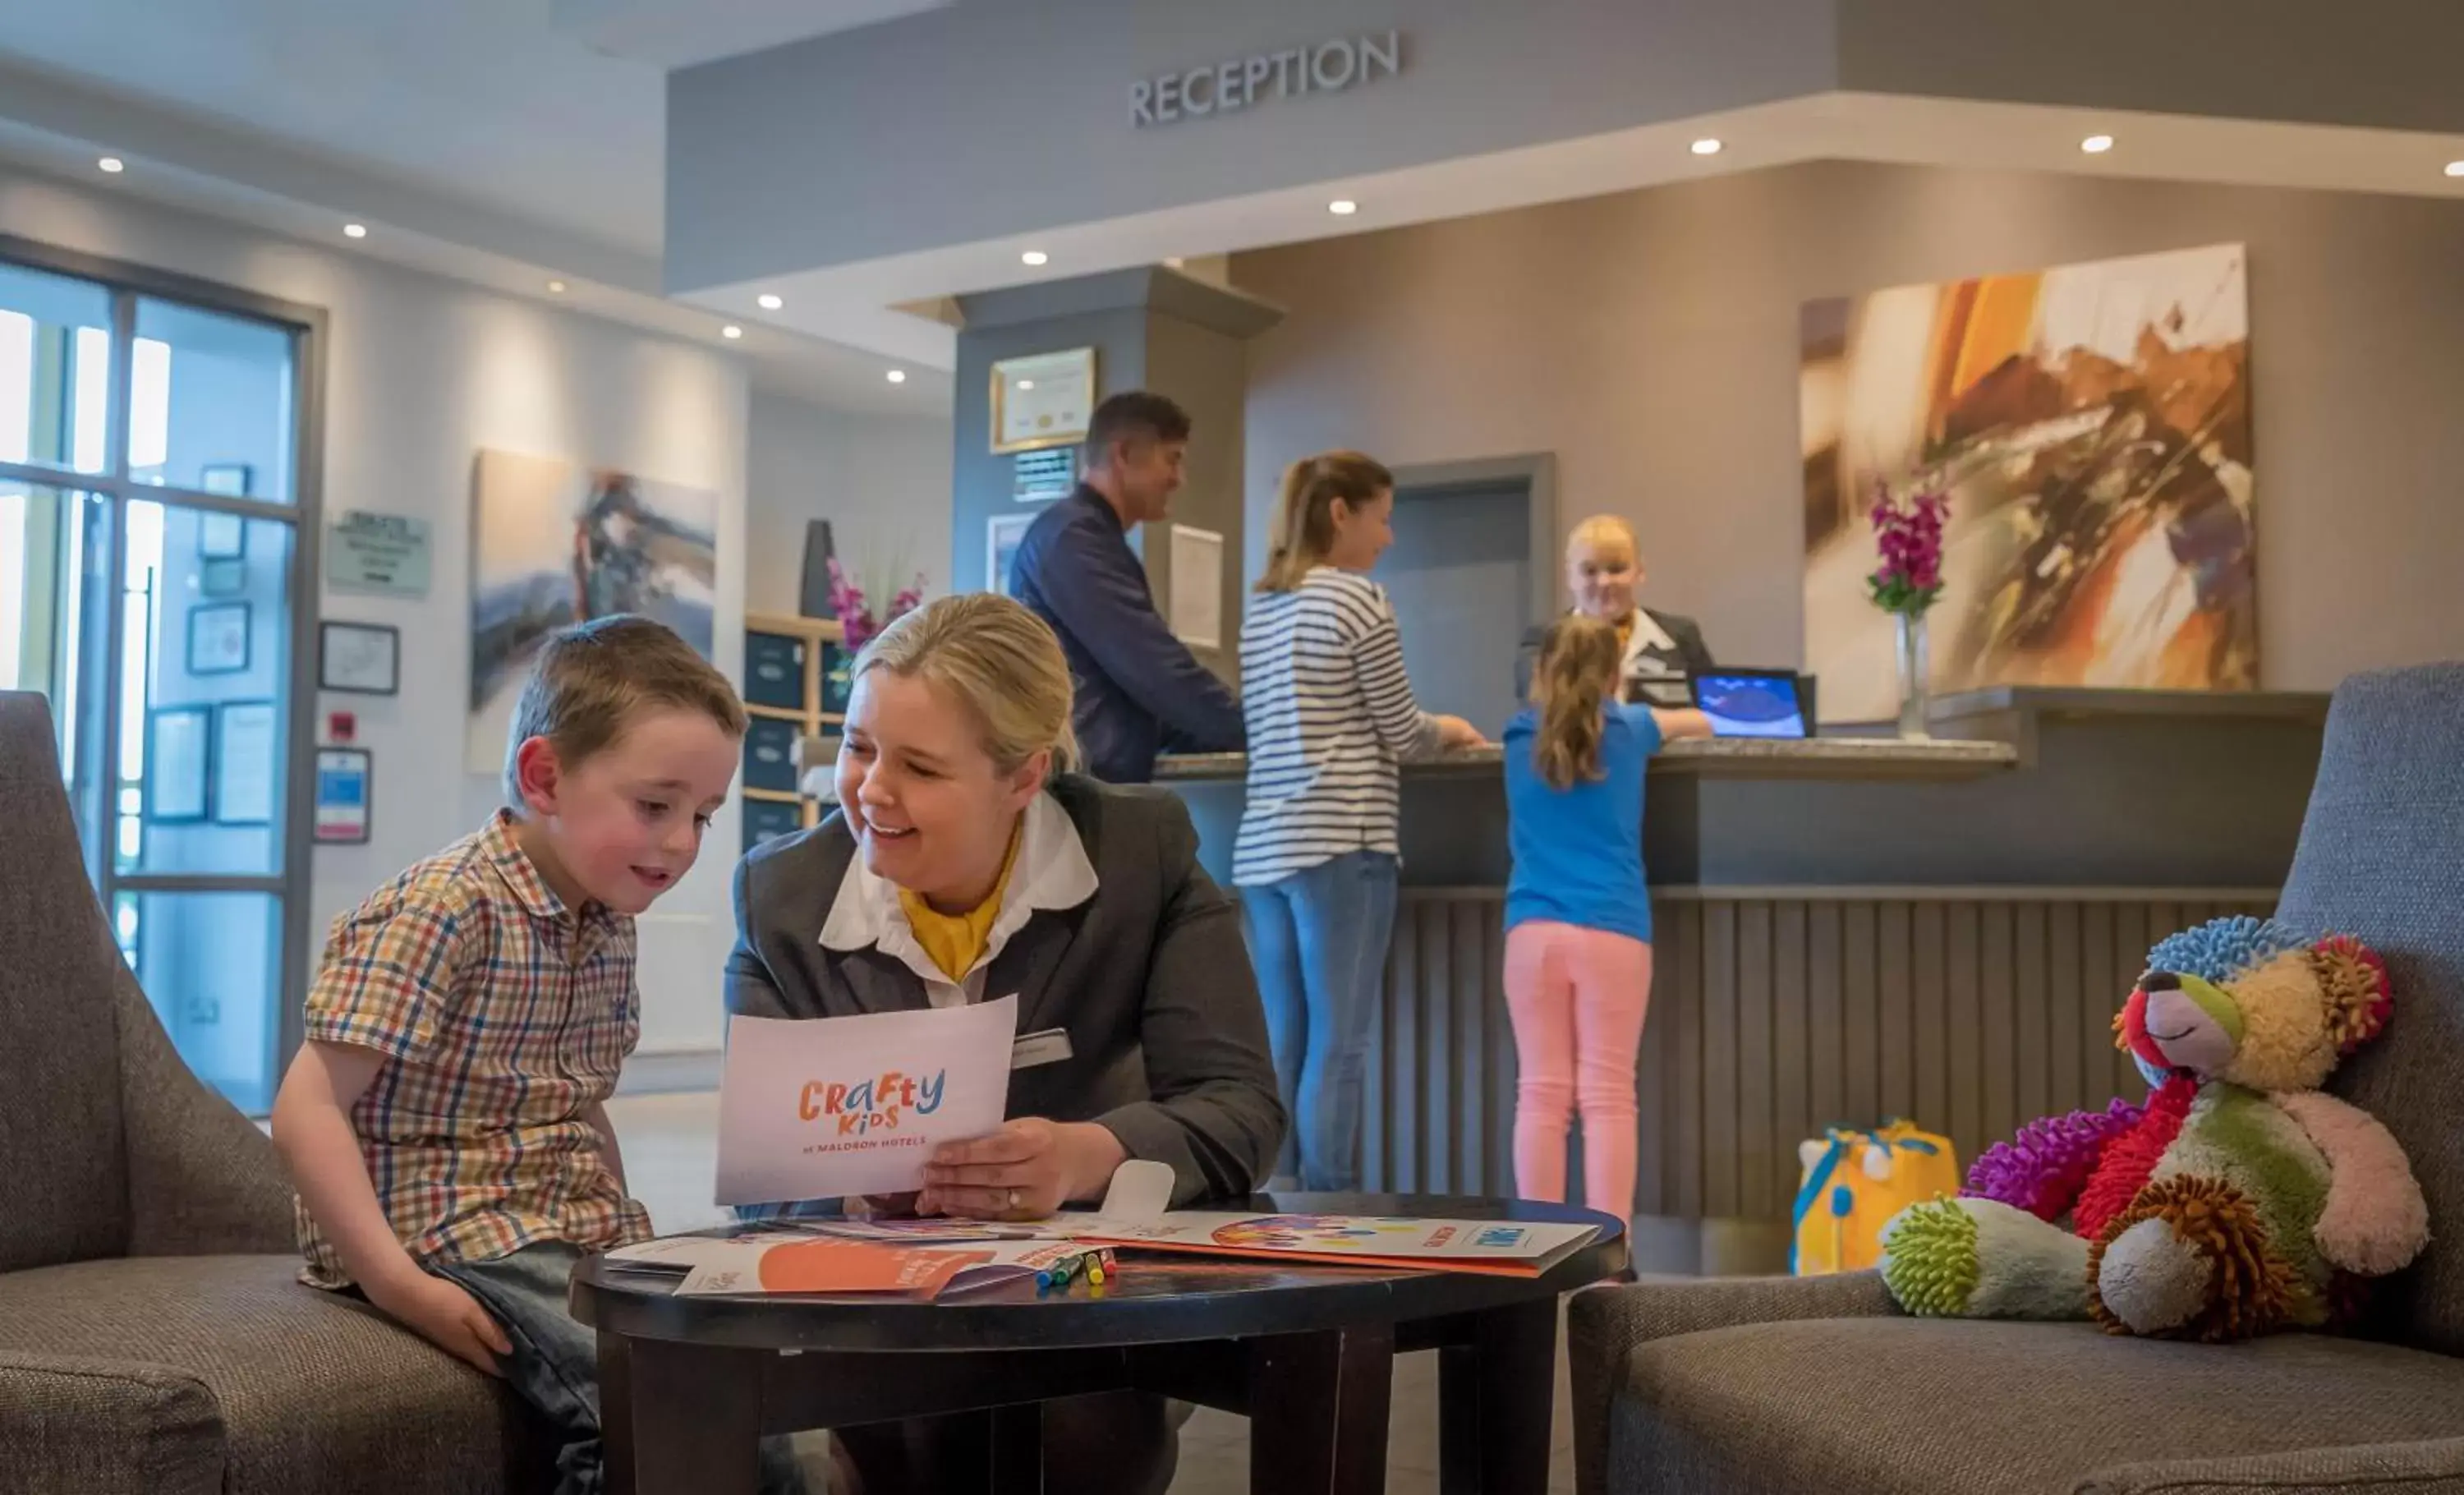 Lobby or reception in Maldron Hotel Wexford